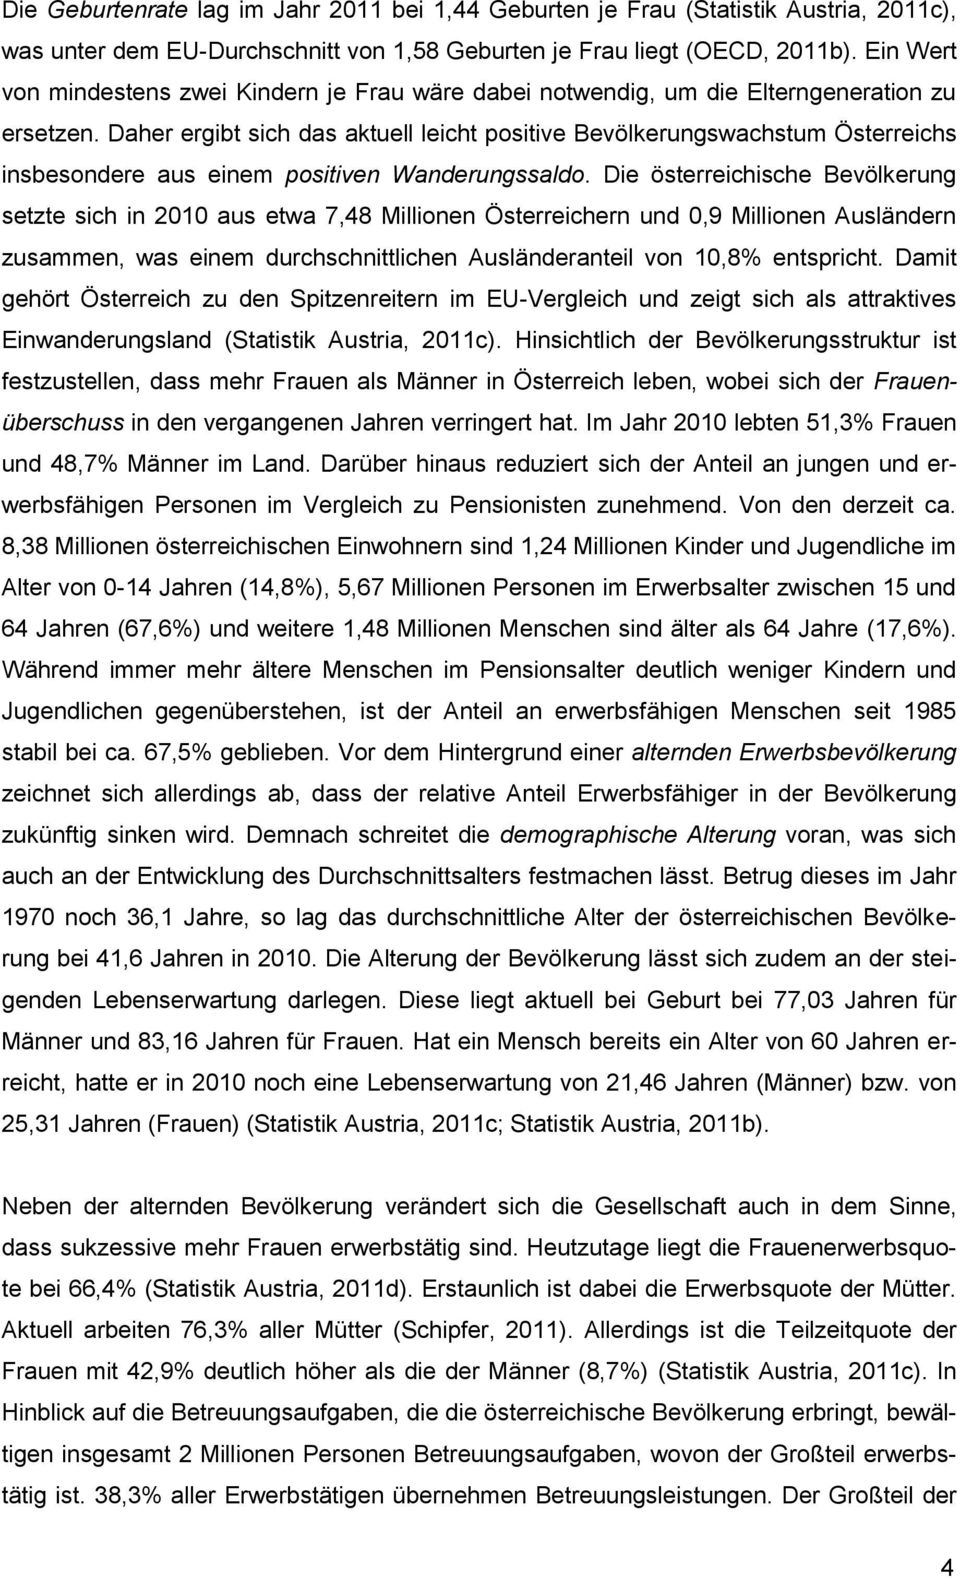 Daher ergibt sich das aktuell leicht positive Bevölkerungswachstum Österreichs insbesondere aus einem positiven Wanderungssaldo.